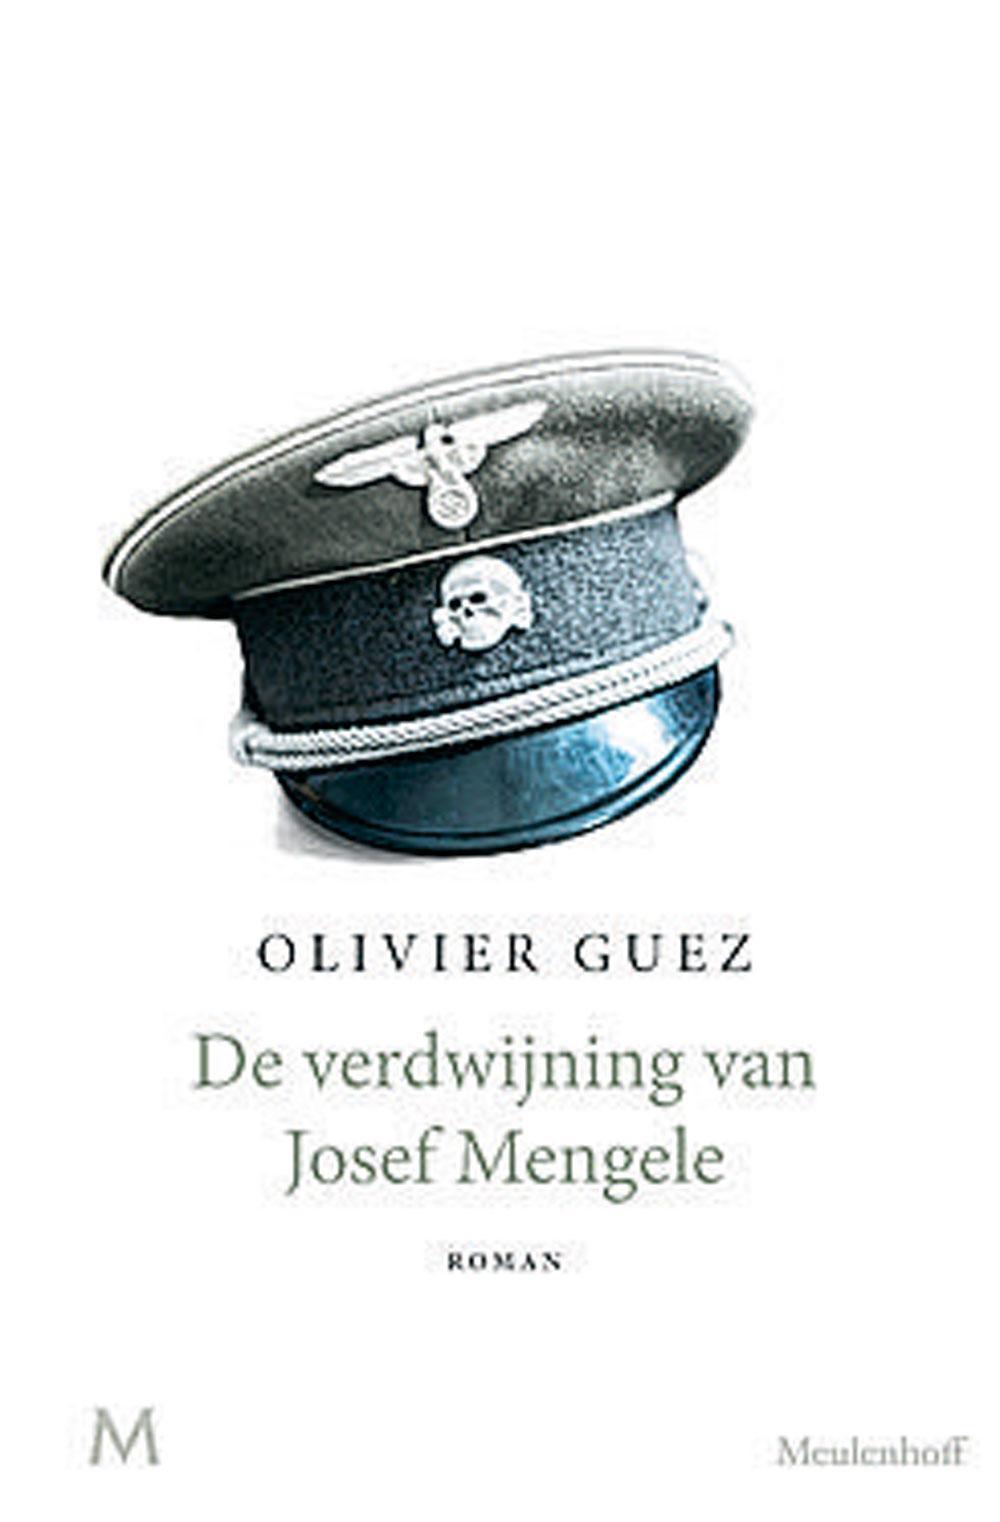 Olivier Guez, De verdwijning van Josef Mengele, Meulenhoff, 224 blz., 19,99 euro.